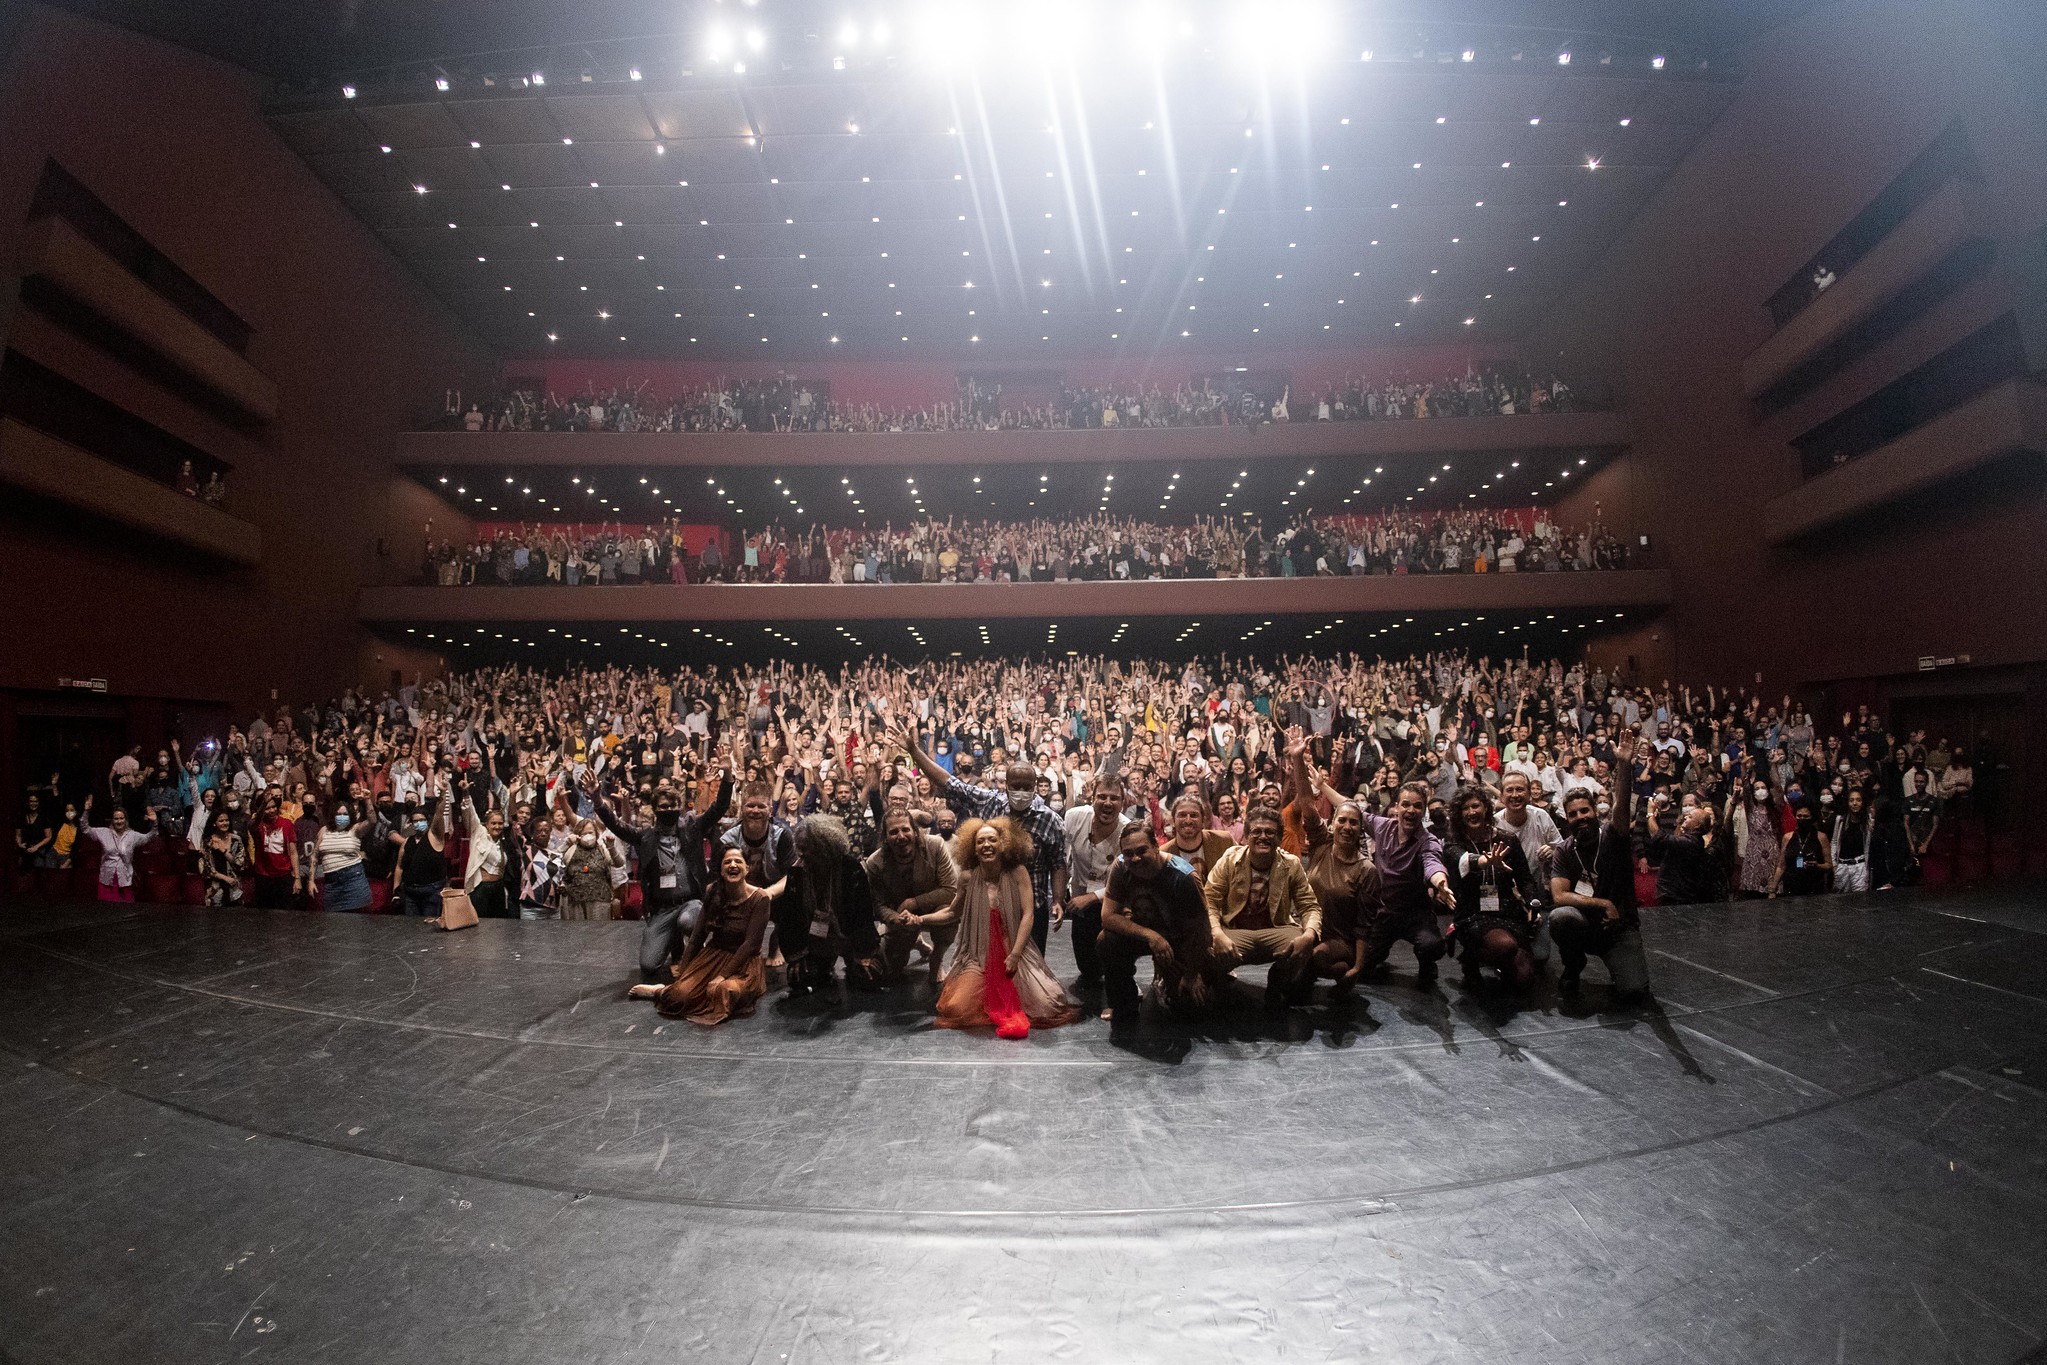 Festival Mostra Lúcia Camargo reuniu mais de 40 mil pessoas nas plateias dos principais teatros de Curitiba (Annelize Tozzetto)